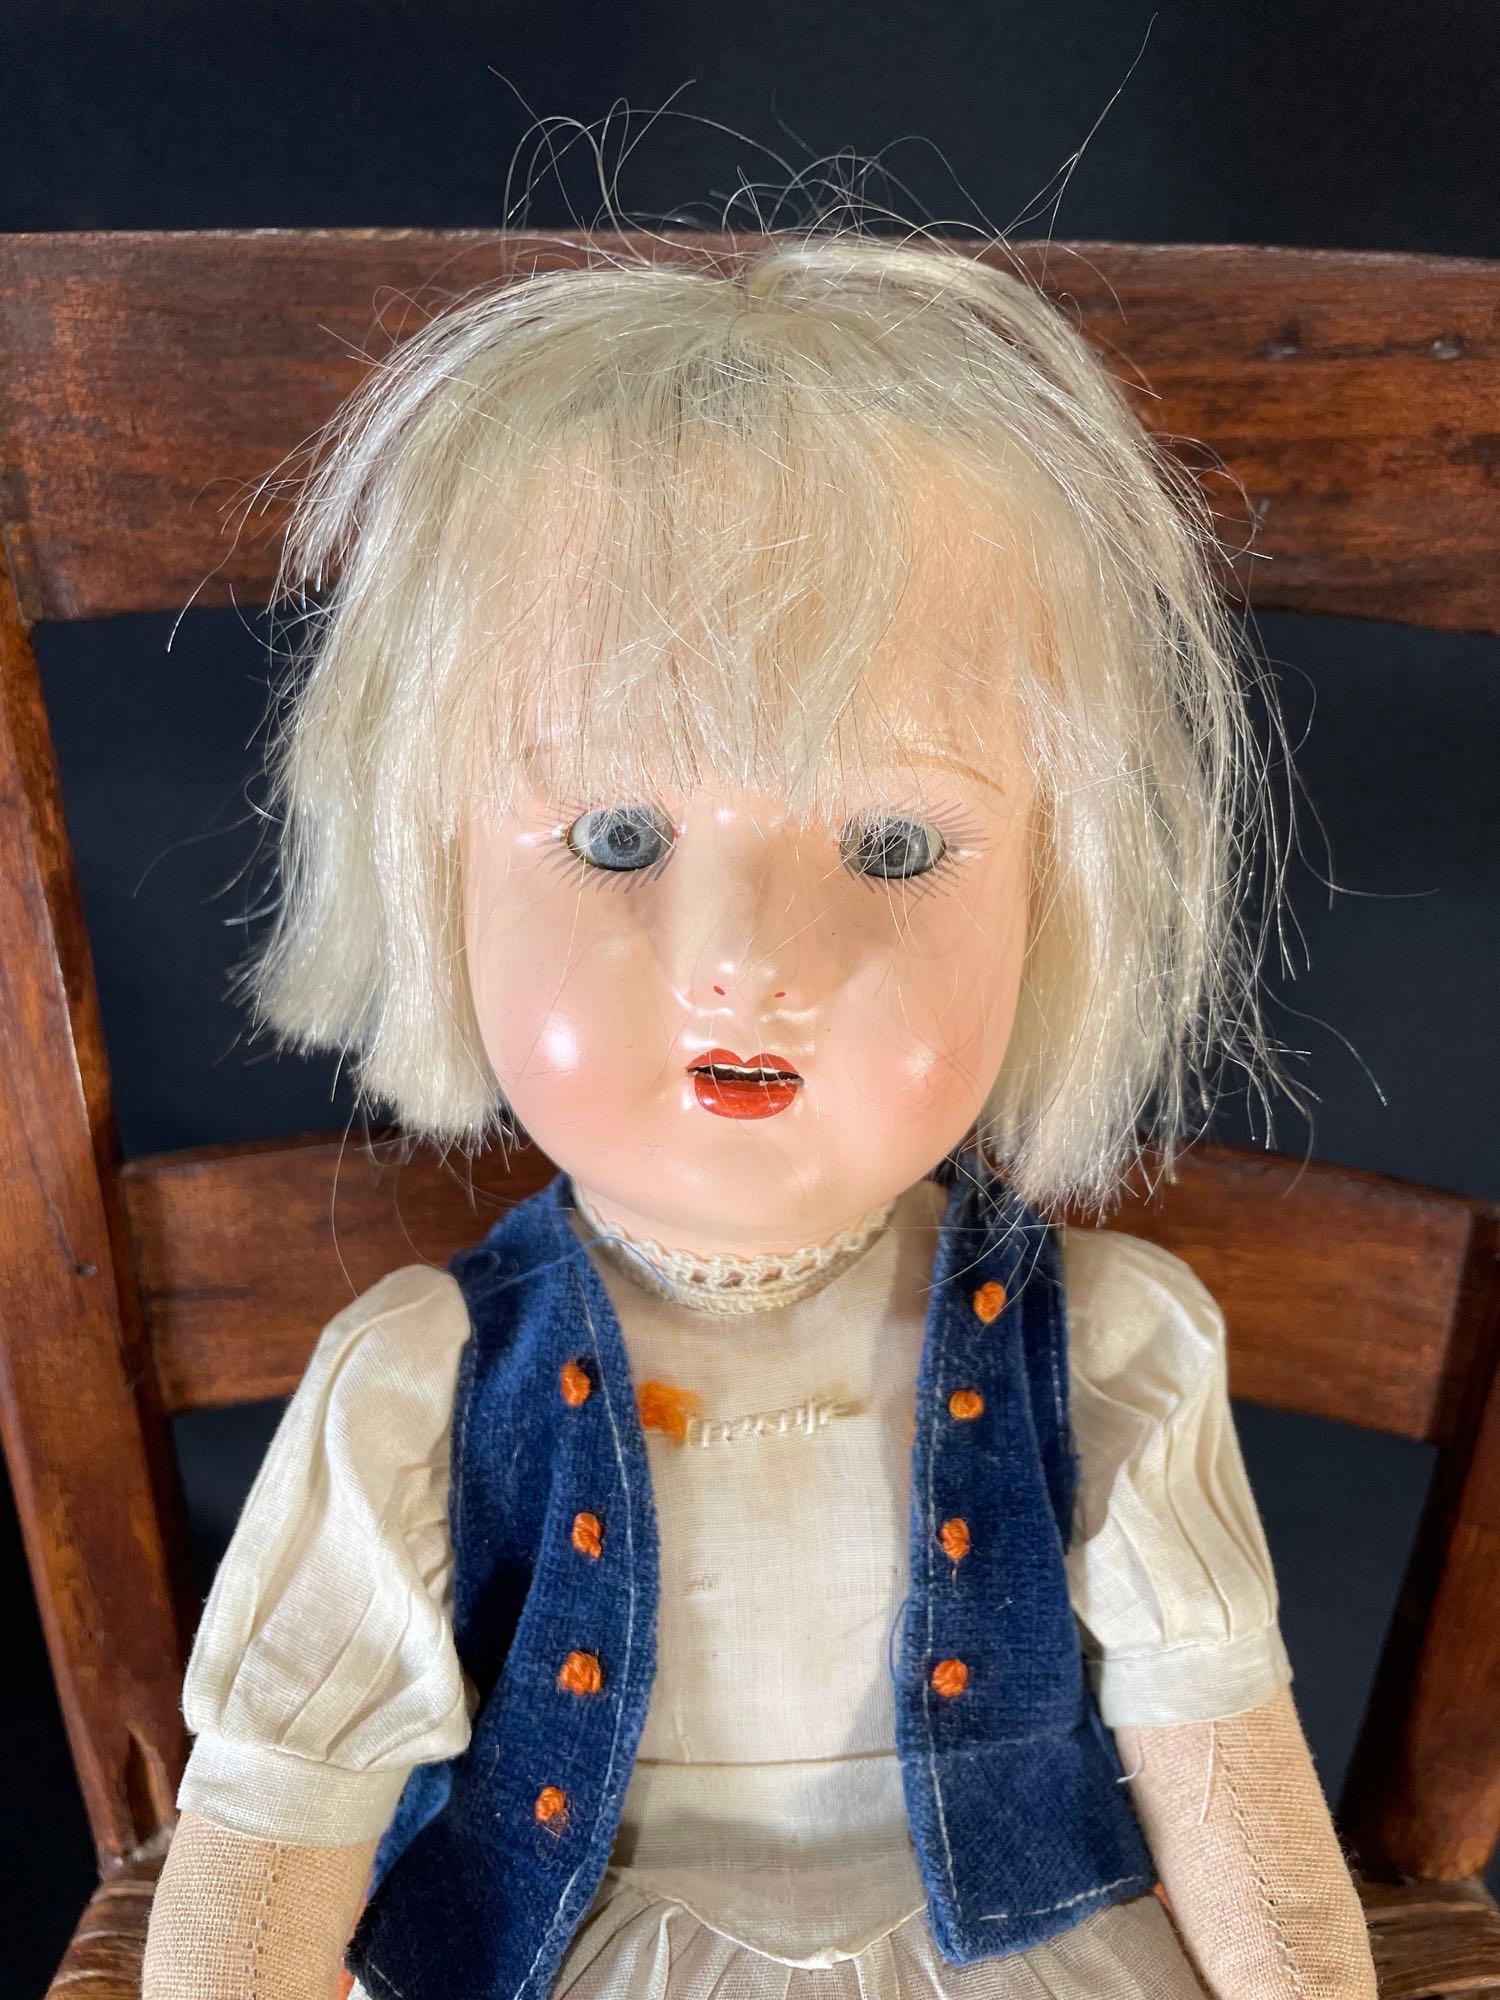 11" Kammer Reinhart doll & 15" Effenbee patch girl doll